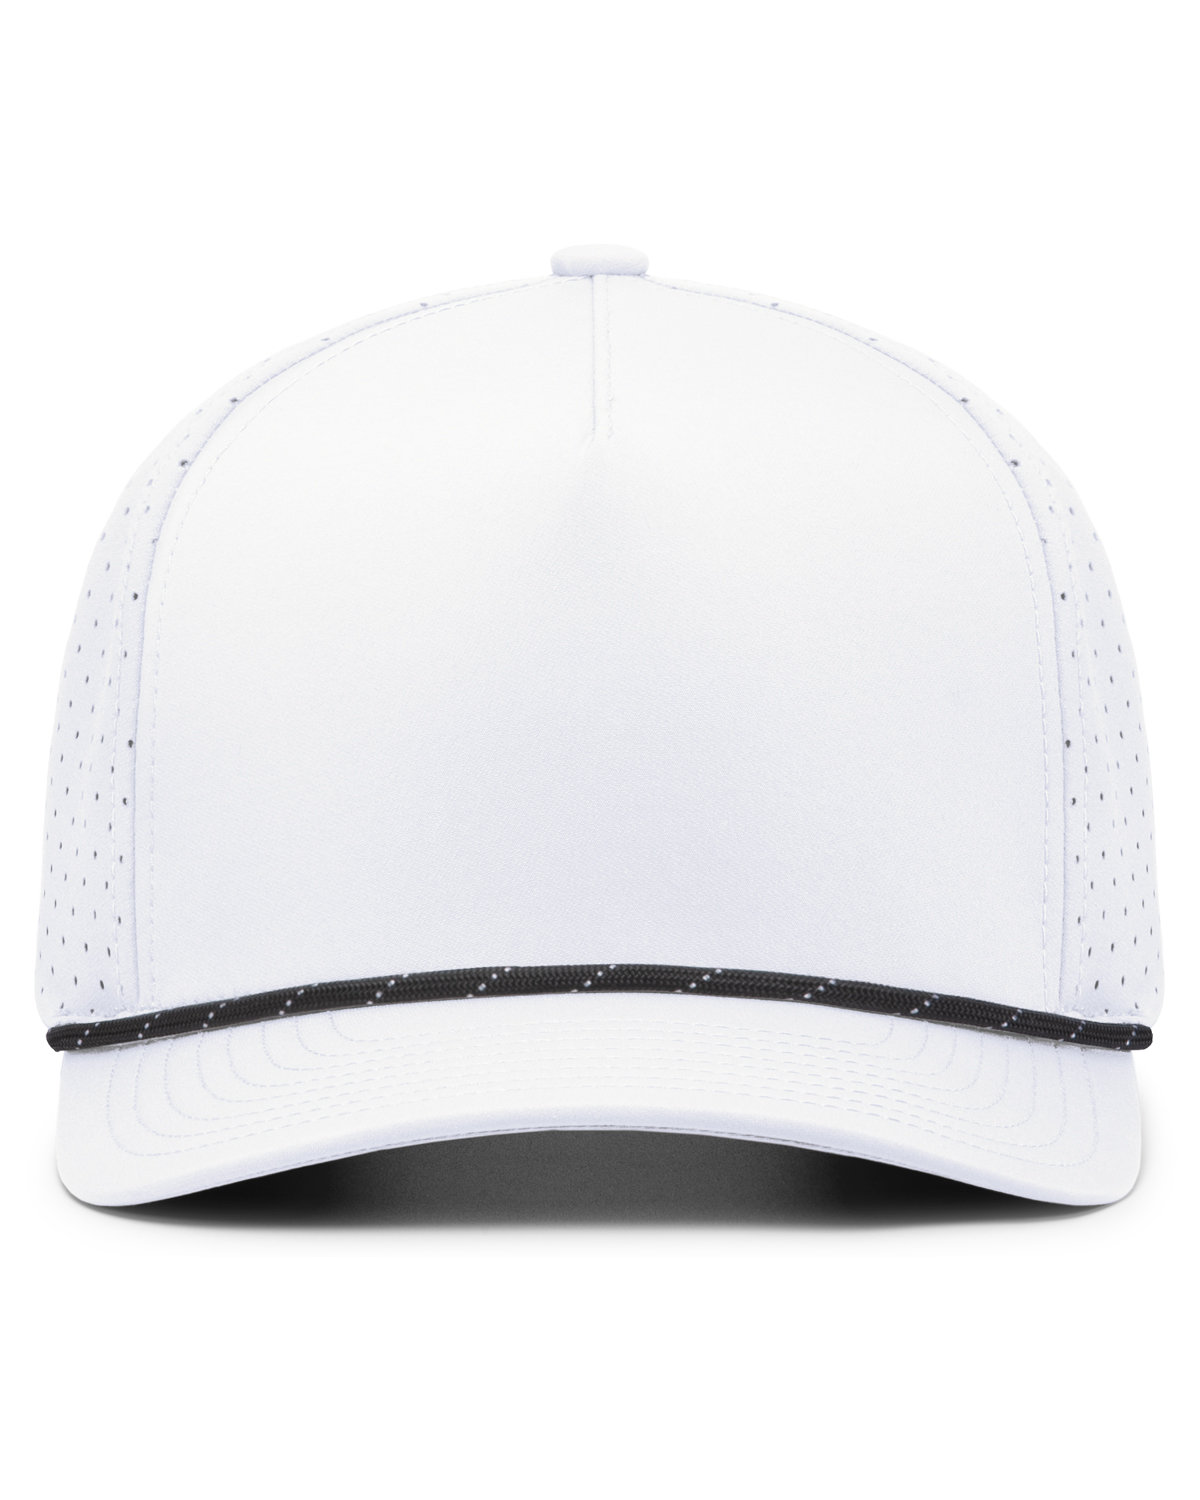 Pacific Headwear Weekender Perforated Snapback Cap | alphabroder